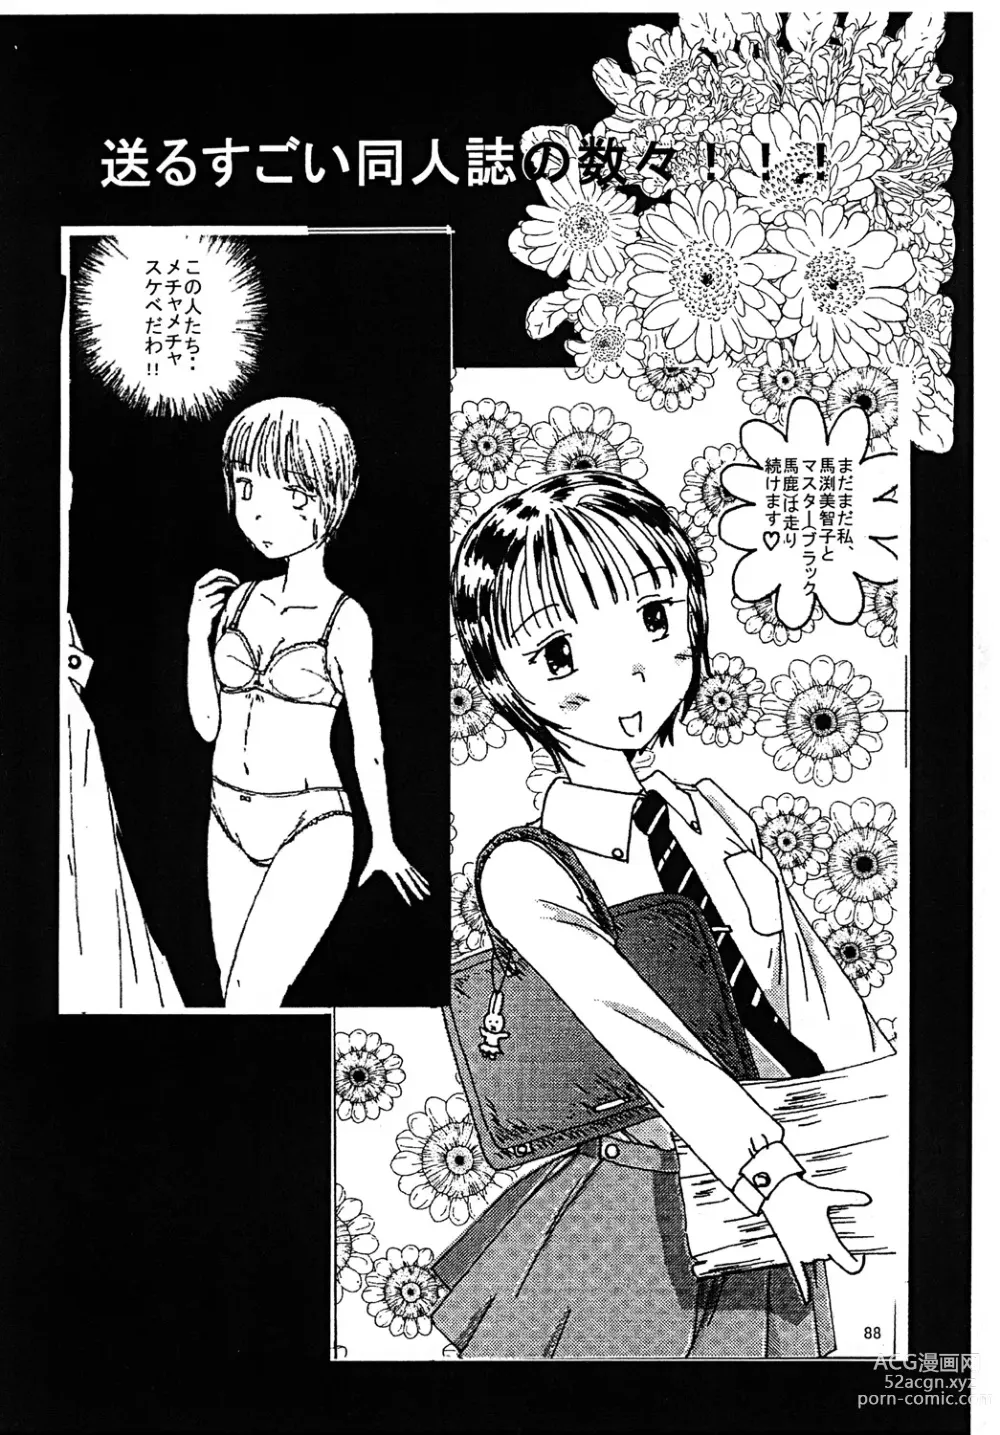 Page 87 of doujinshi Mune Ippai no Dizzy